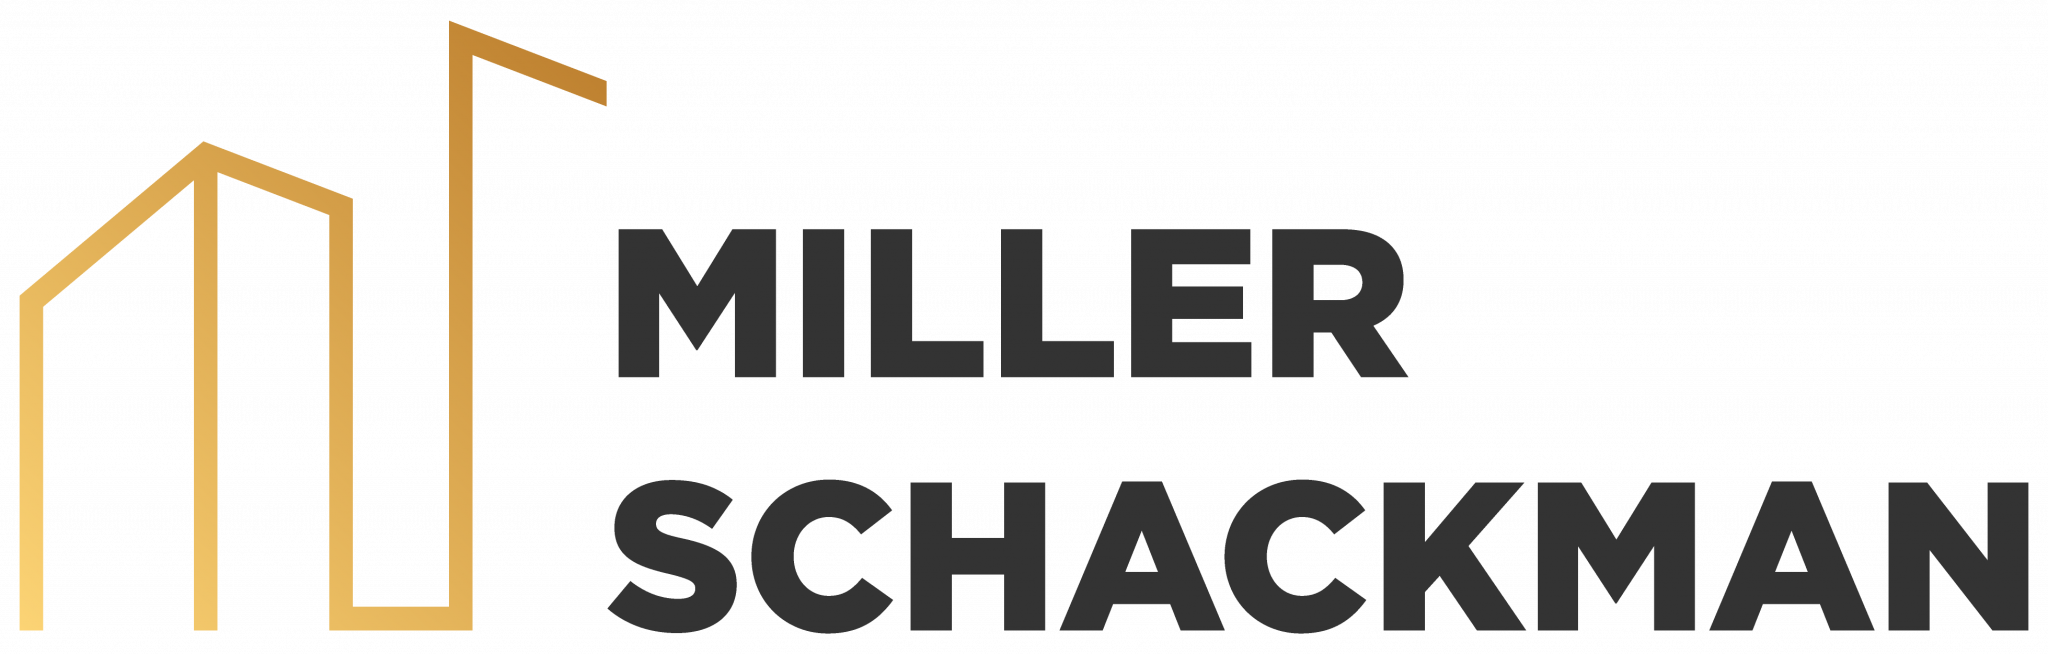 Miller Schackman Team